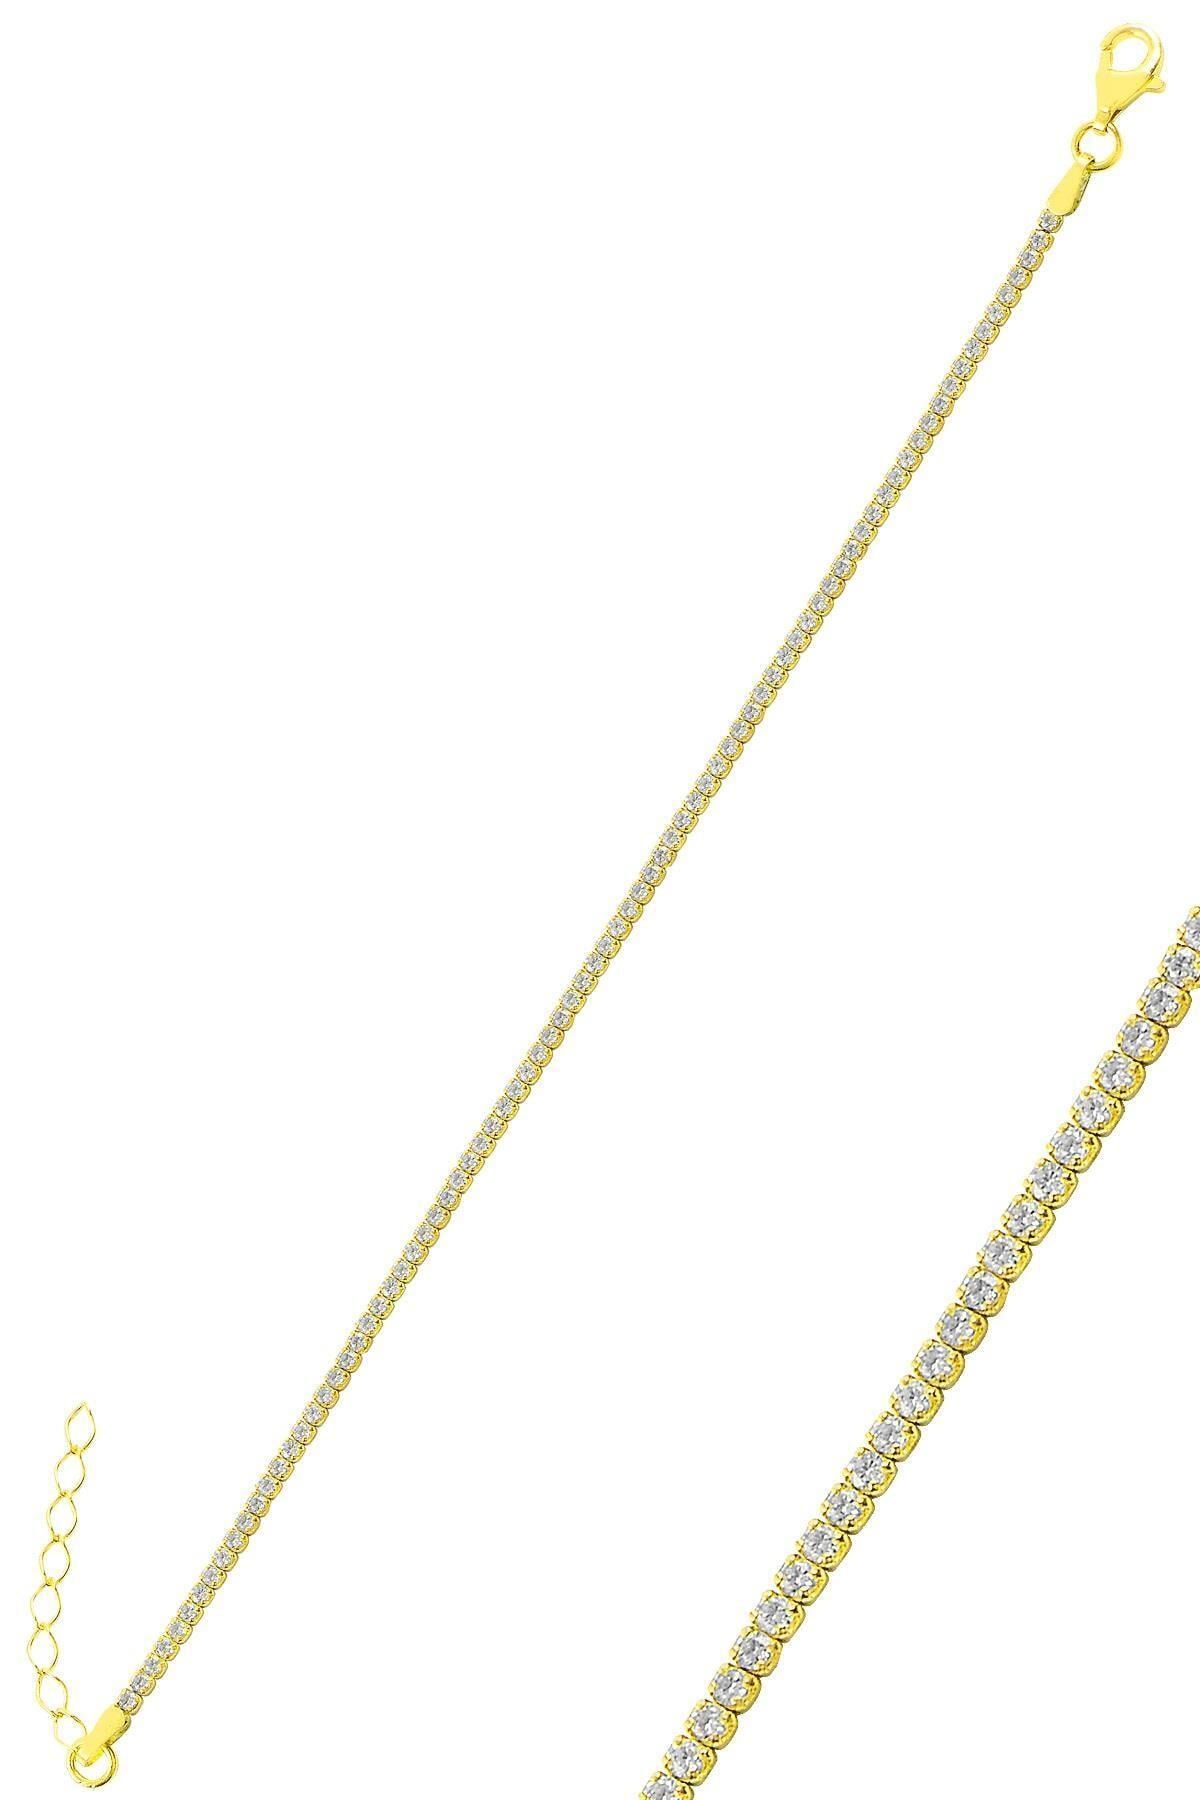 Söğütlü Silver Gümüş Altın Yaldızlı Pırlanta Modeli Zirkon Taşlı Su Yolu Bileklik